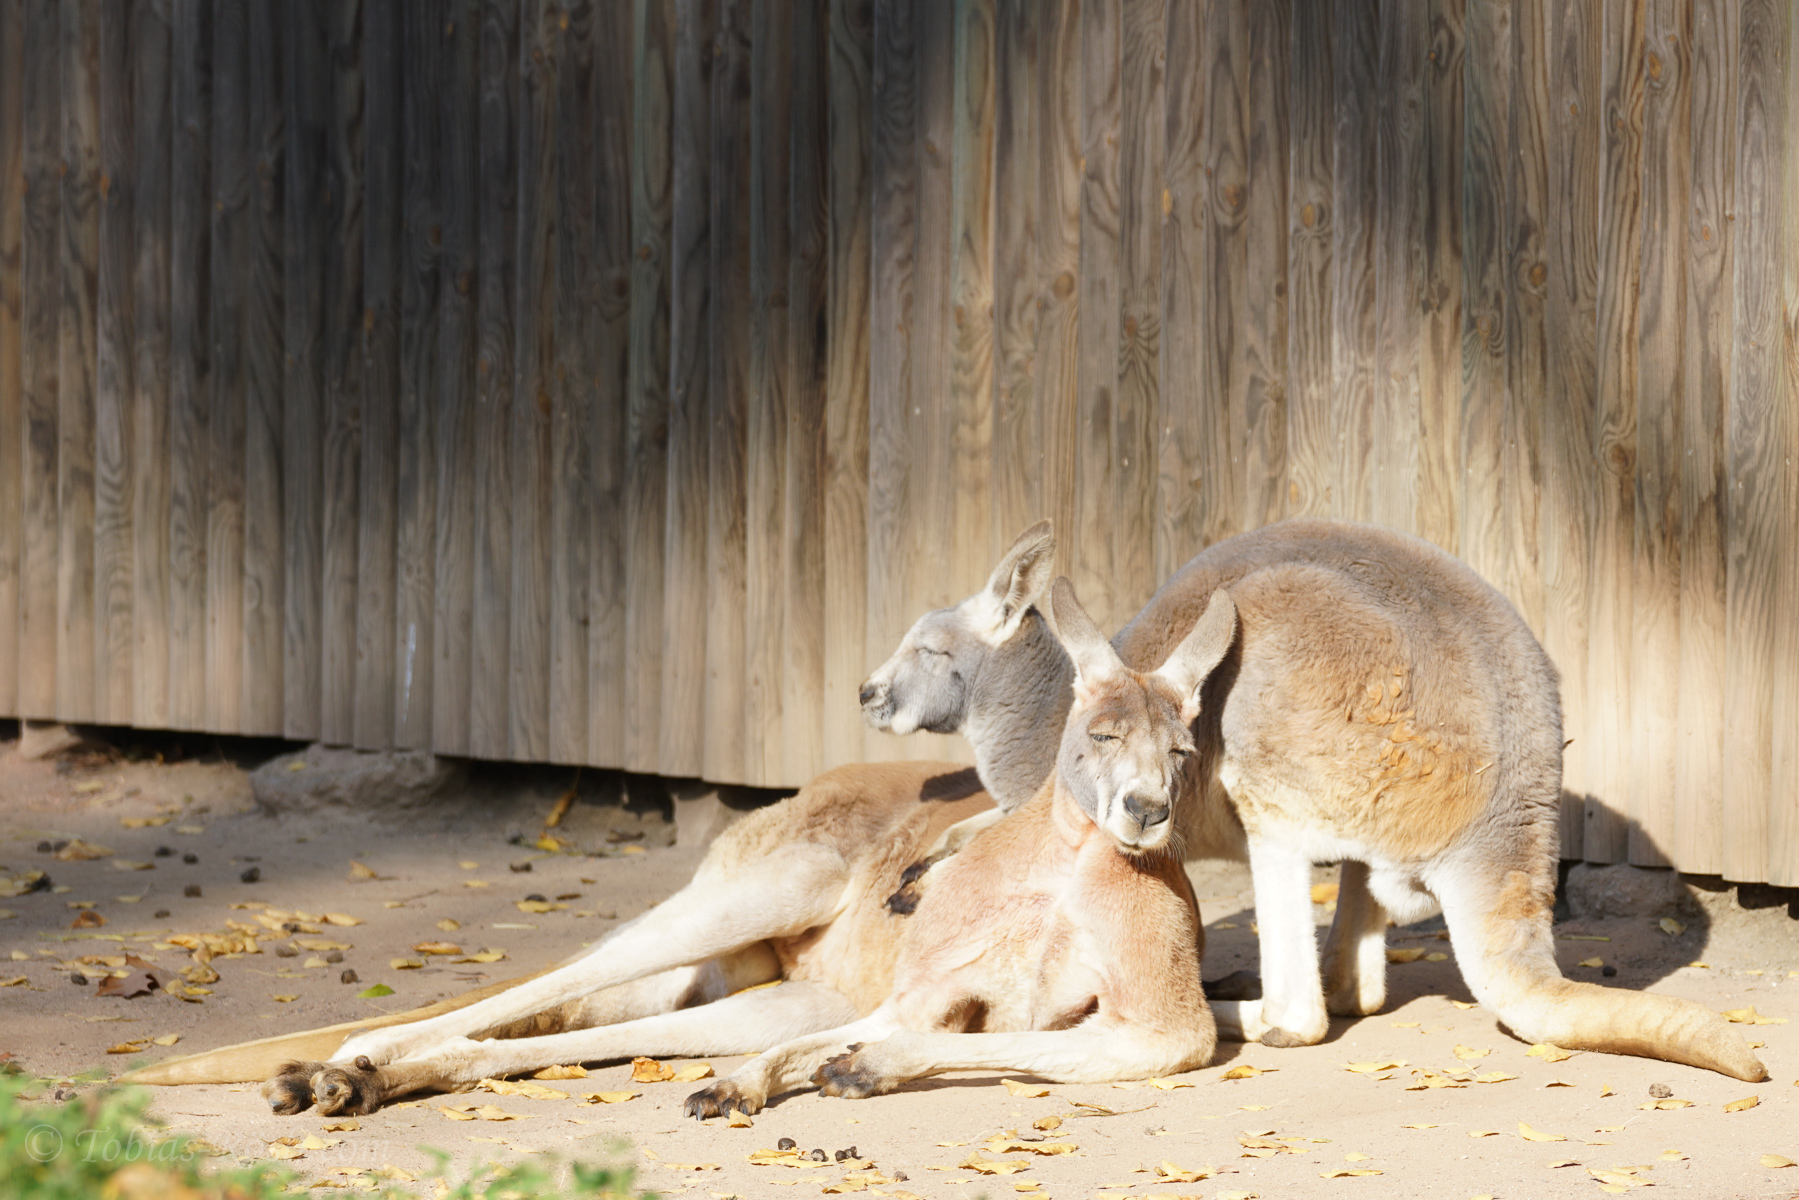 Two lazy kangaroos